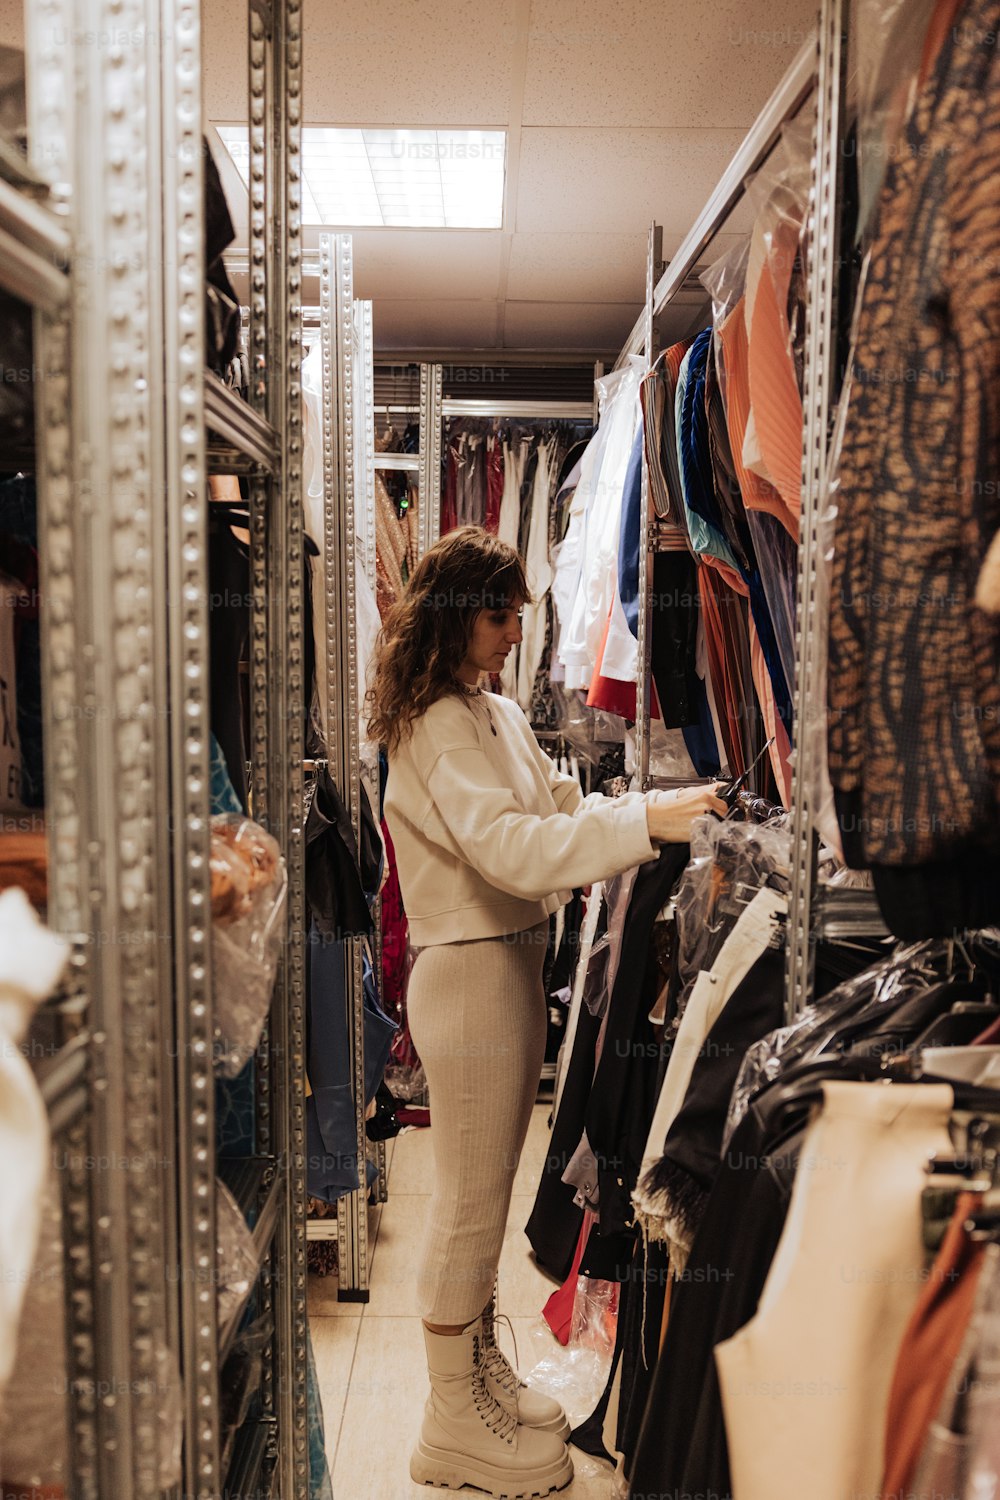 Una donna che guarda i vestiti in un armadio